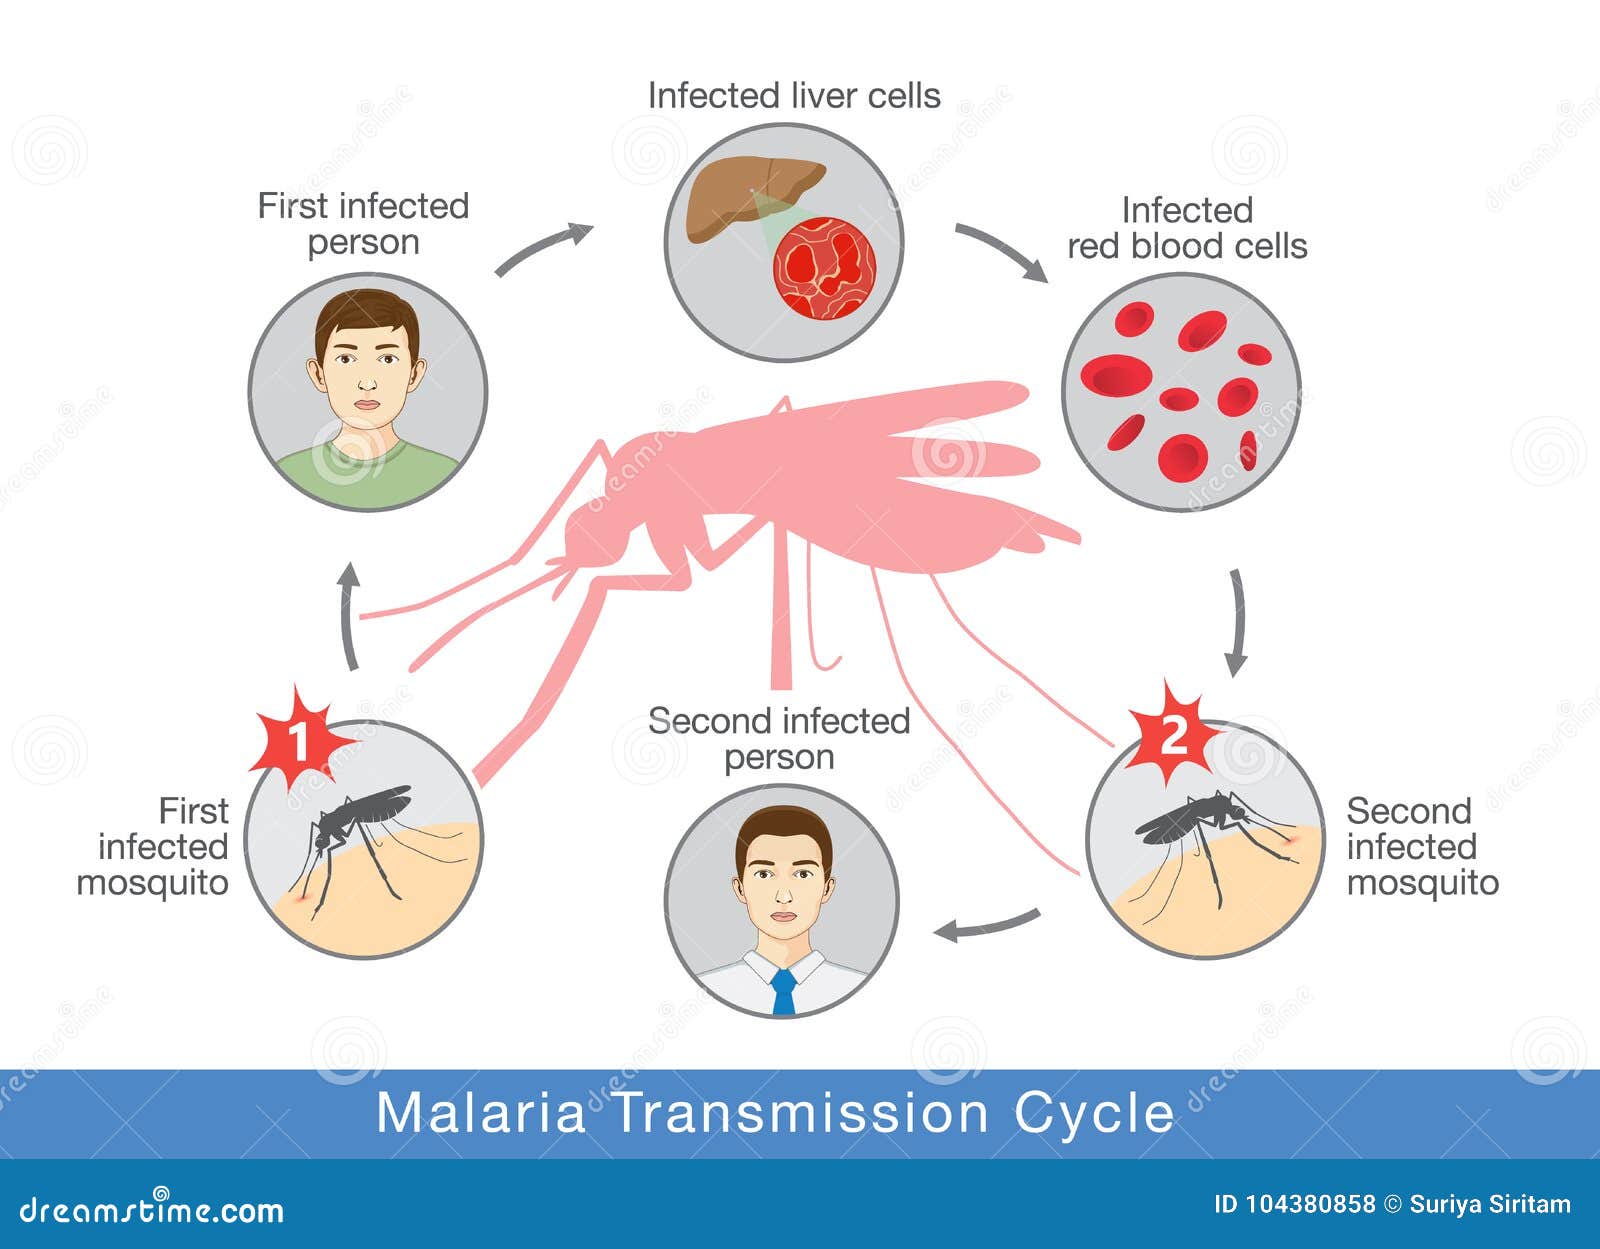 Возбудителем зоонозной малярии является. Механизм заражения малярией. Малярия механизм передачи инфекции. Механизм передачи малярийного плазмодия. Пути передачи при малярии.